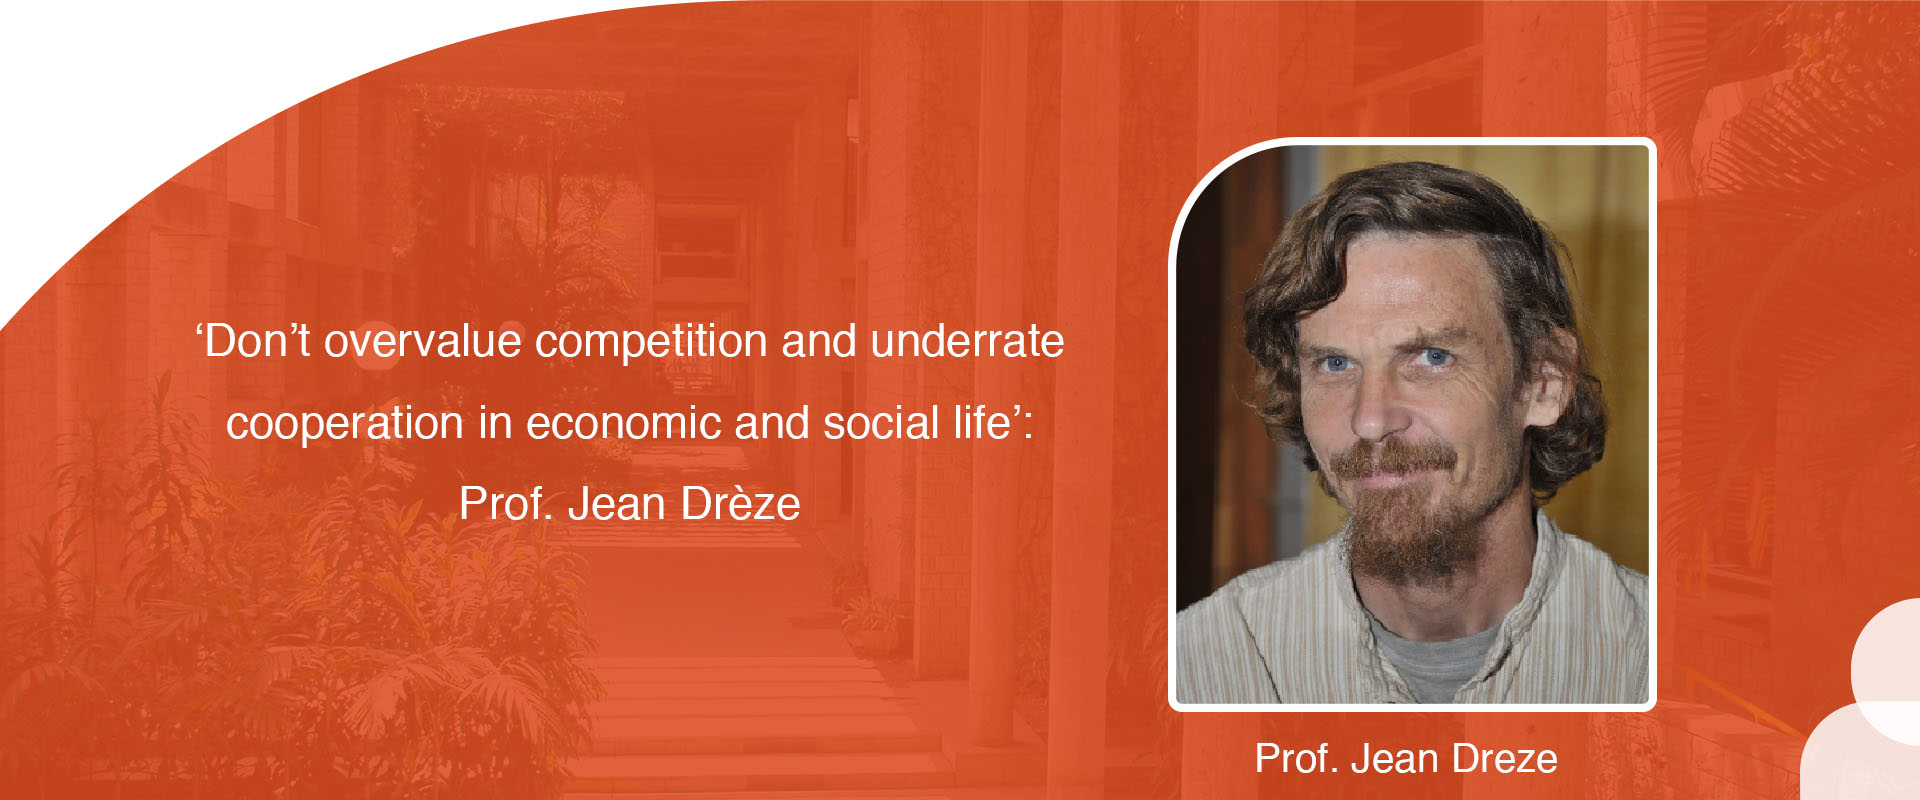 Prof. Jean Drèze